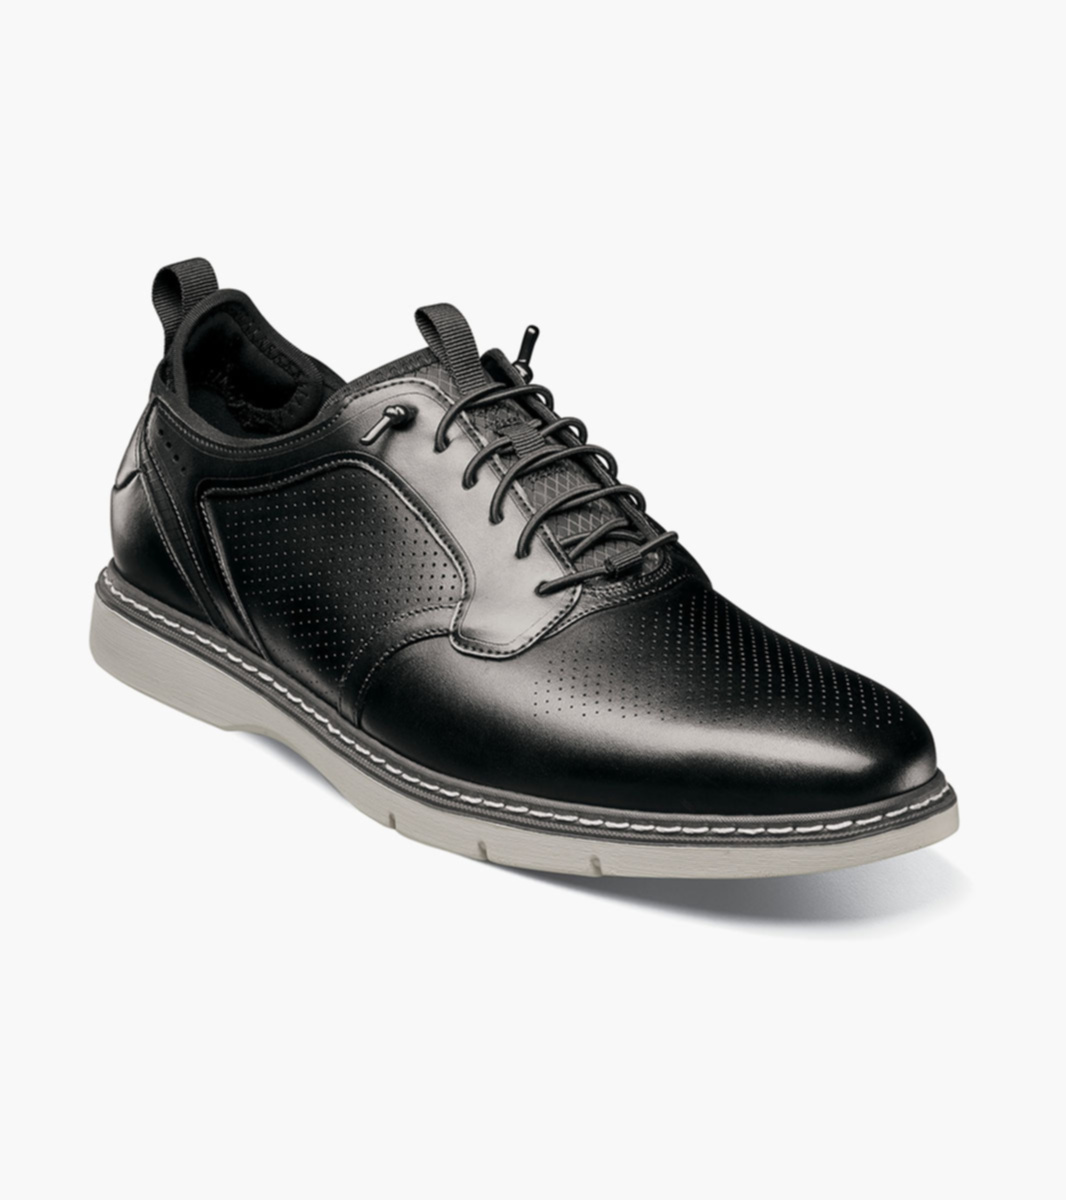  Replay Men's Sneaker, Black 003, 8.5